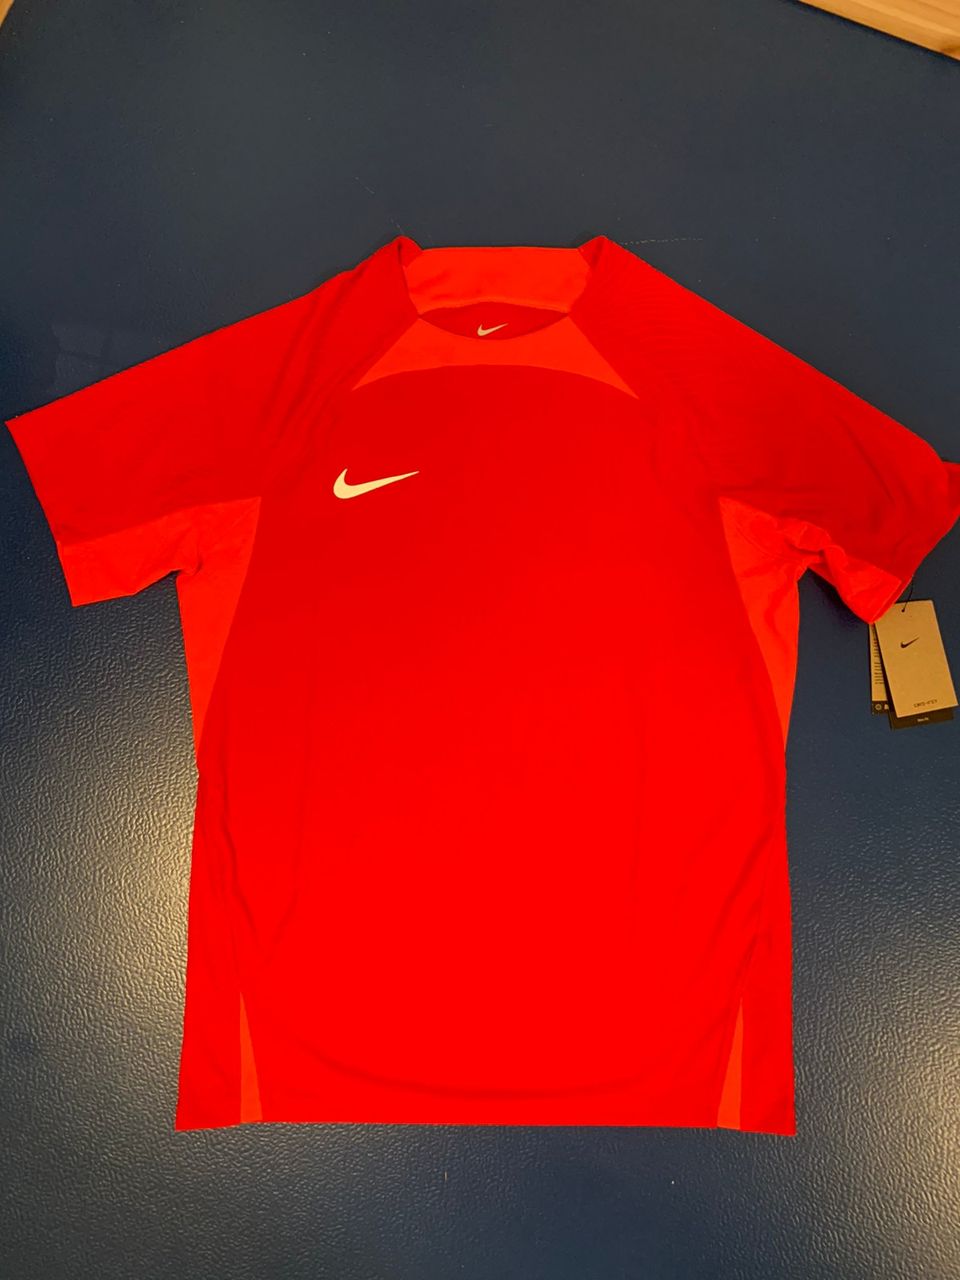 Nike Vapor Dri-Fit jalkapallopaita pelipaita L